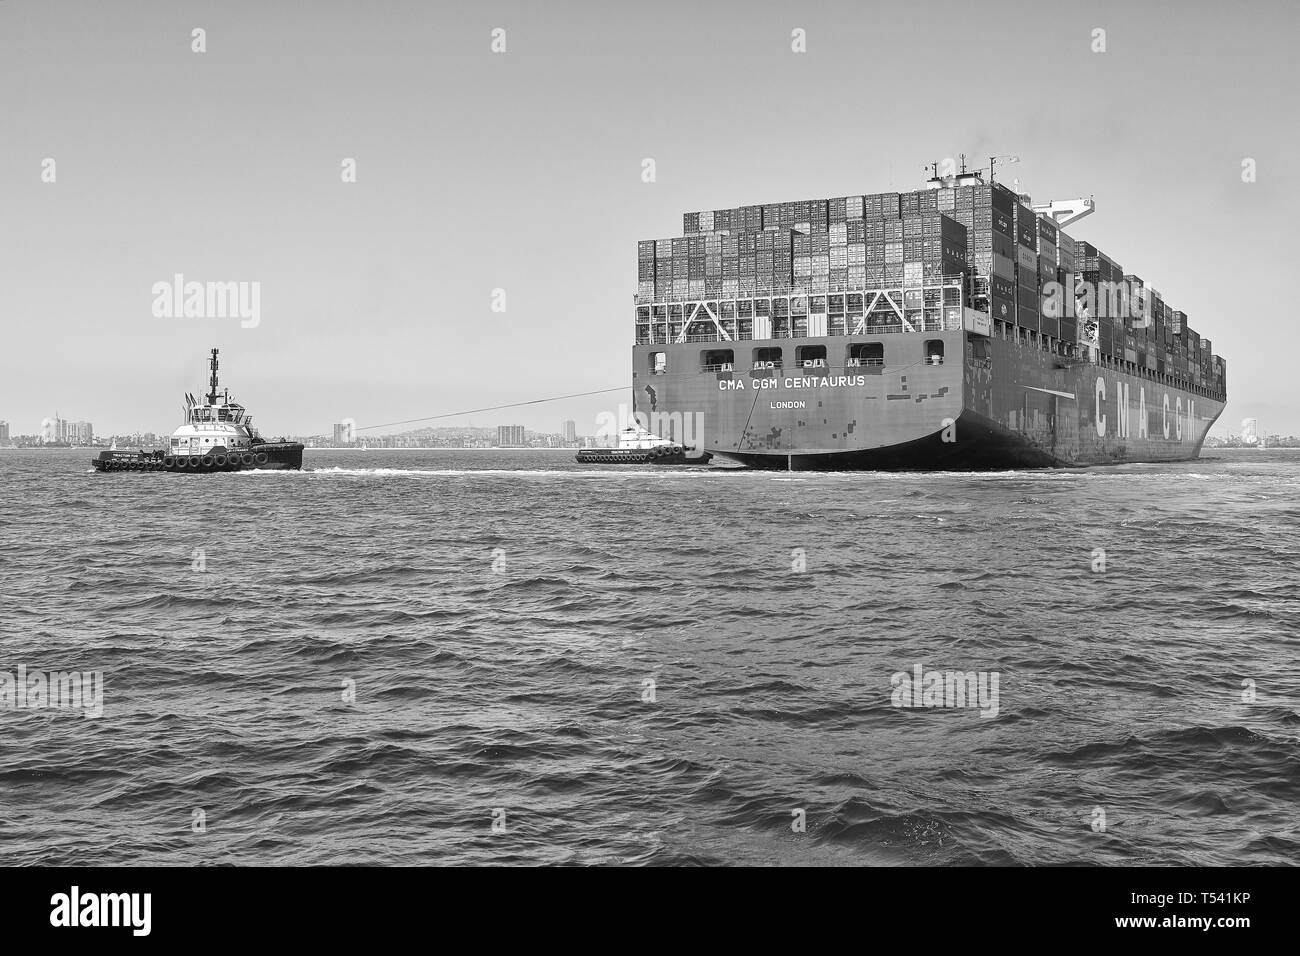 Foto in bianco e nero della nave container, CMA CGM CENTAURUS, girata a 180 gradi da 2 rimorchiatori prima di attraccare a Long Beach, California, USA. Foto Stock